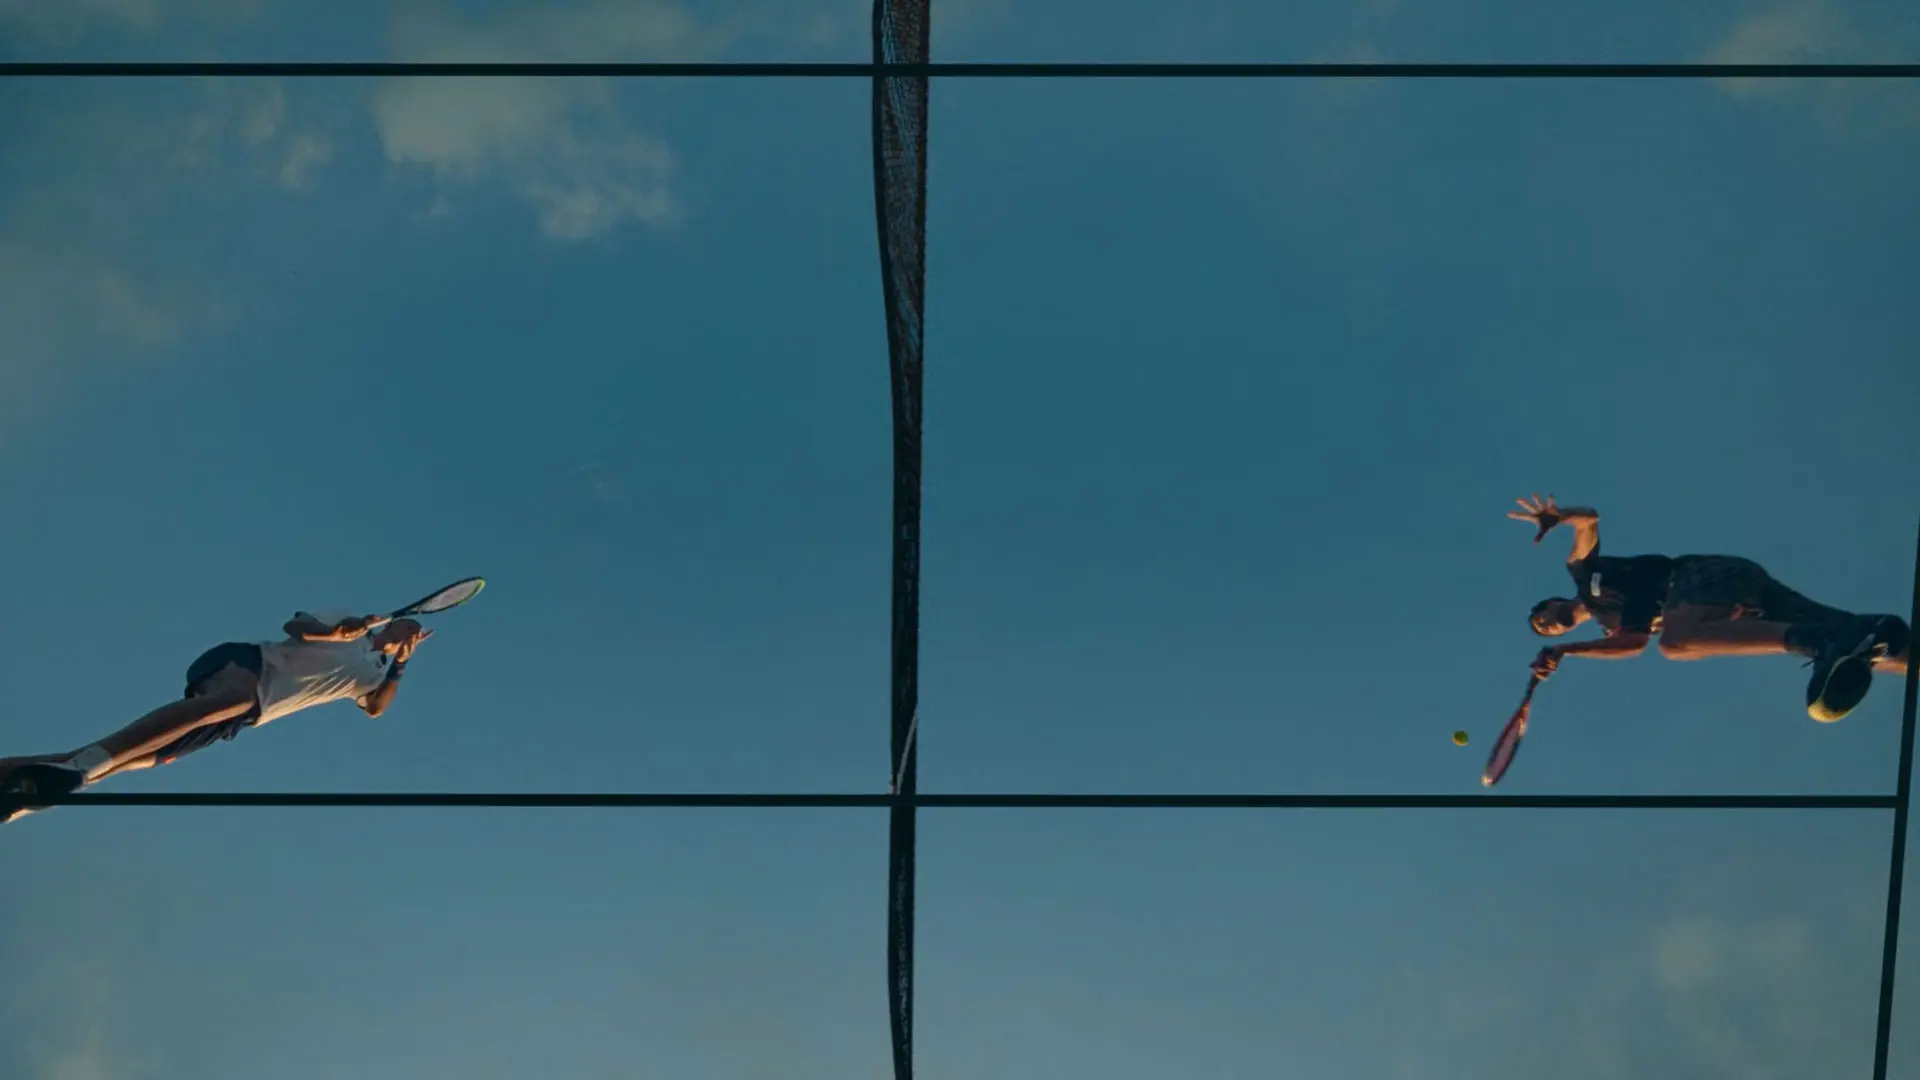 نمایی از پایین به بالا از جاش اوکانر و مایک فیست که داخل یک زمین تنیس به آسمان پریده‌اند در فیلم چلنجرز به کارگردانی لوکا گوادانینو